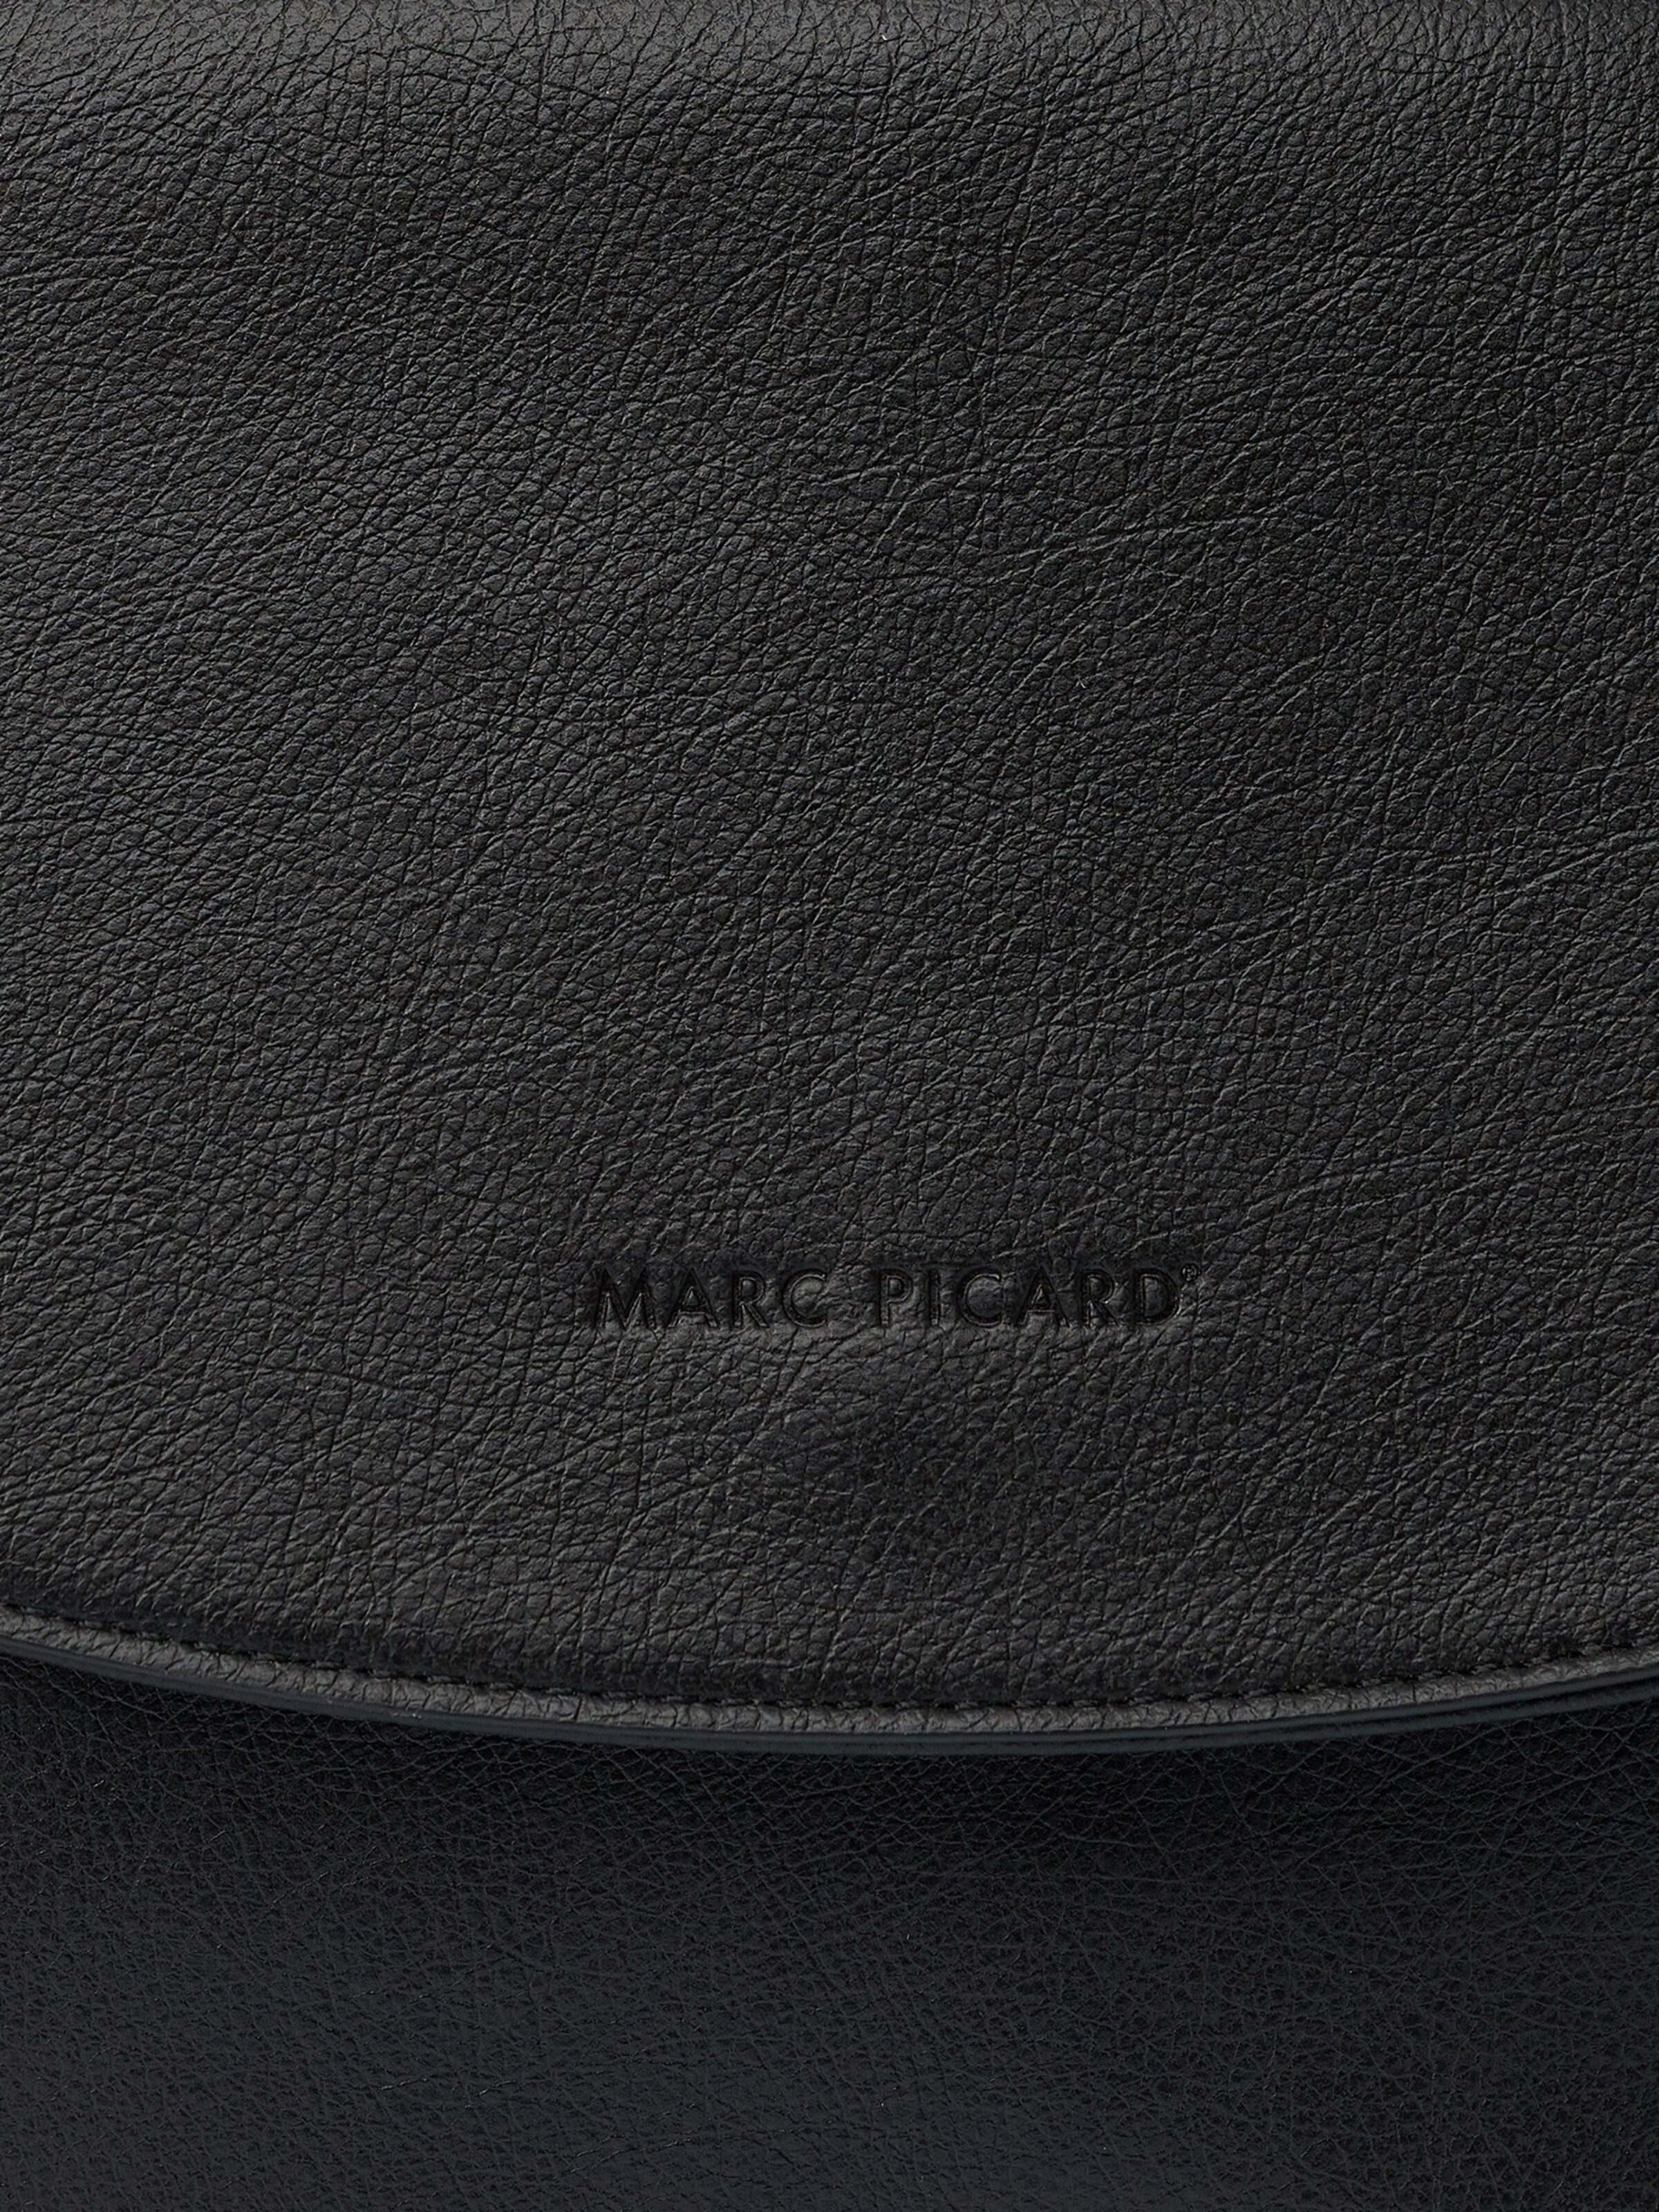 Frauen Taschen & Rucksäcke Marc Picard Tasche 'Shopper mit aufgesetzter Tasche' in Schwarz - PC66614